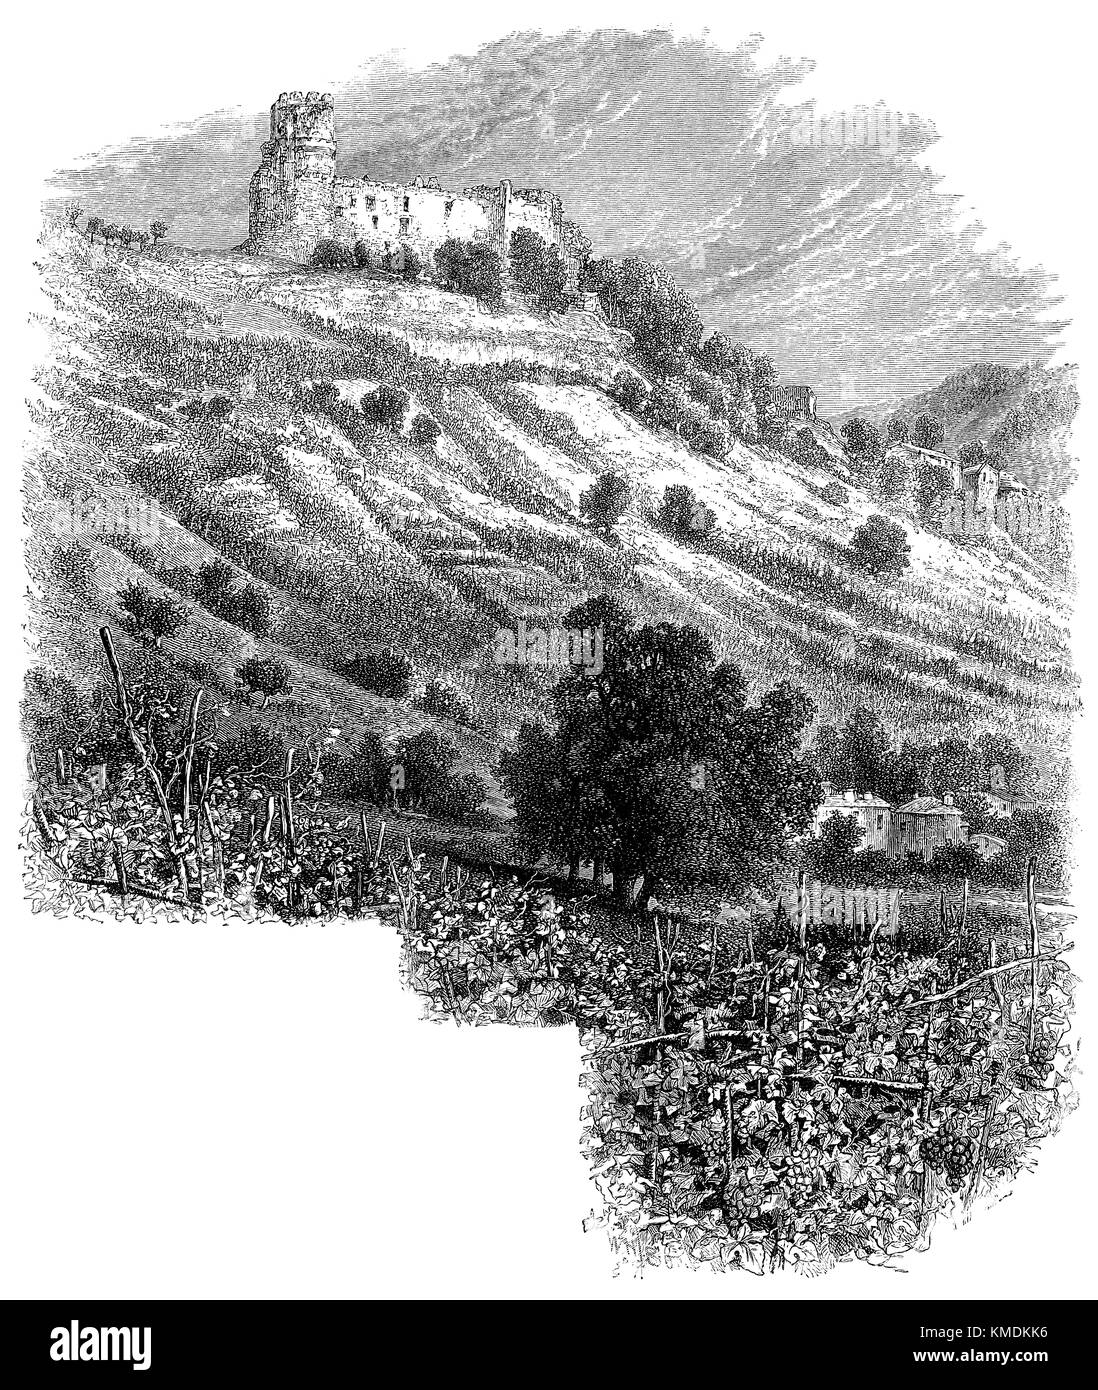 19. jahrhundert Holzstich von Château de Tournoël, eine mittelalterliche Burg in Volvic, Frankreich. Stockfoto